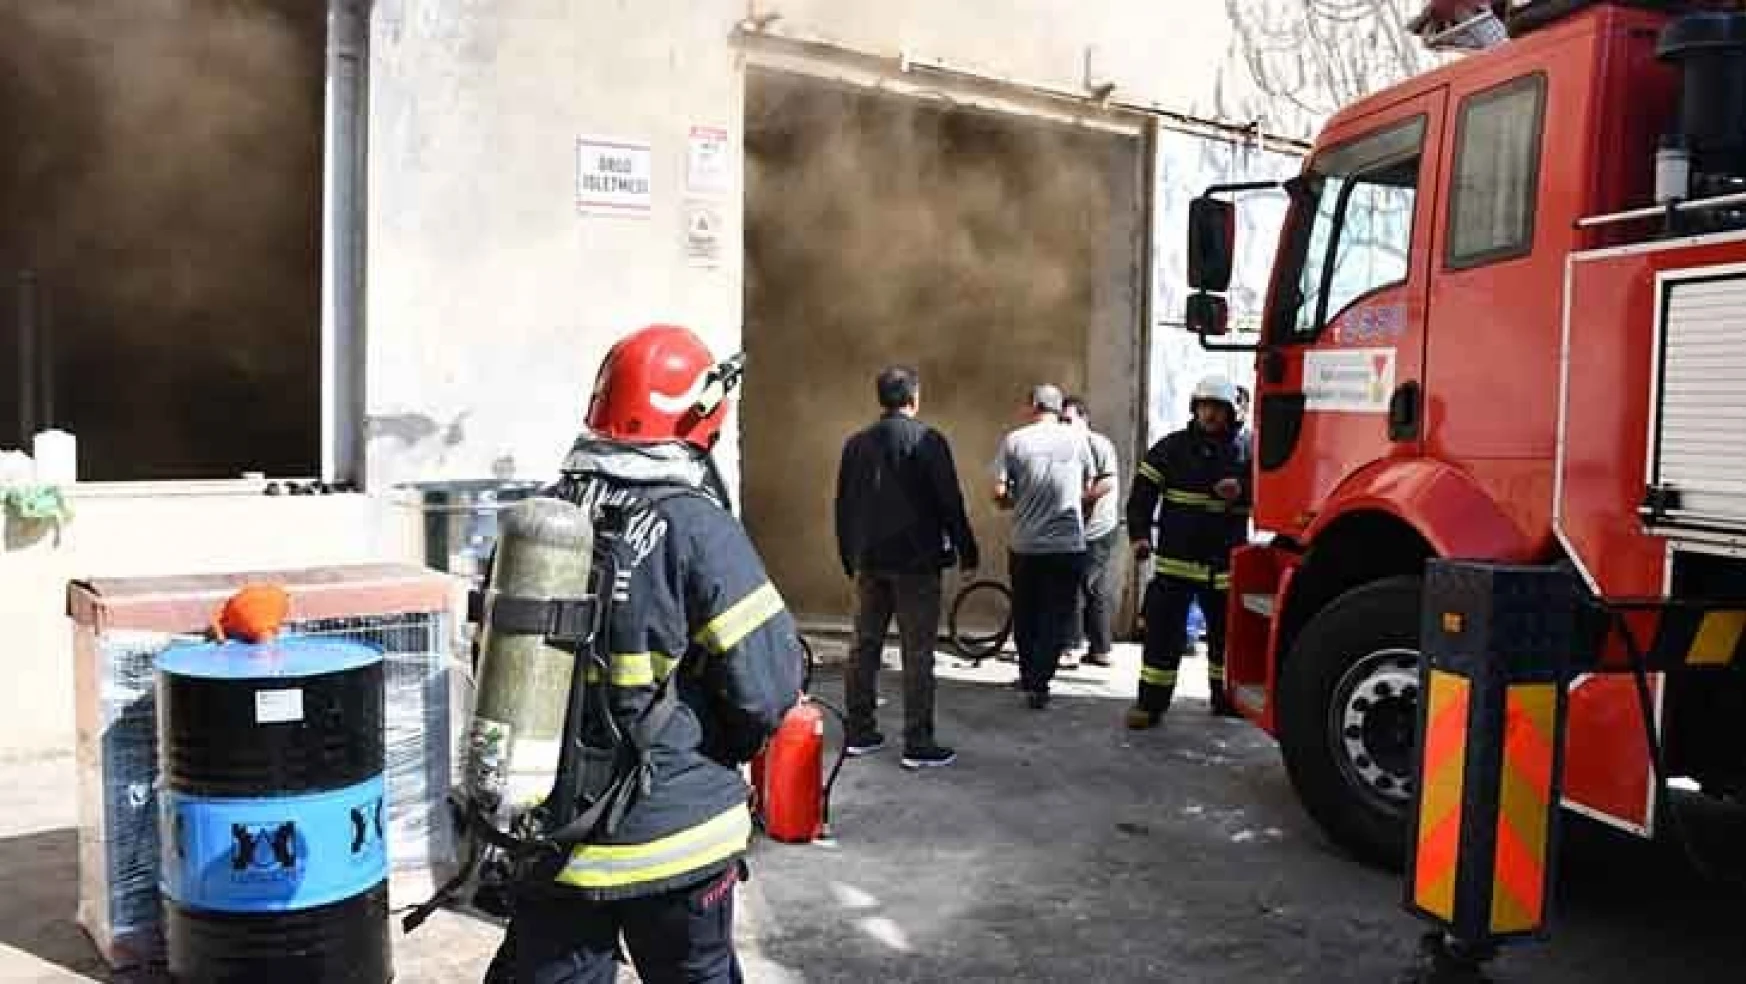 Kahramanmaraş'ta tekstil fabrikasında yangın çıktı